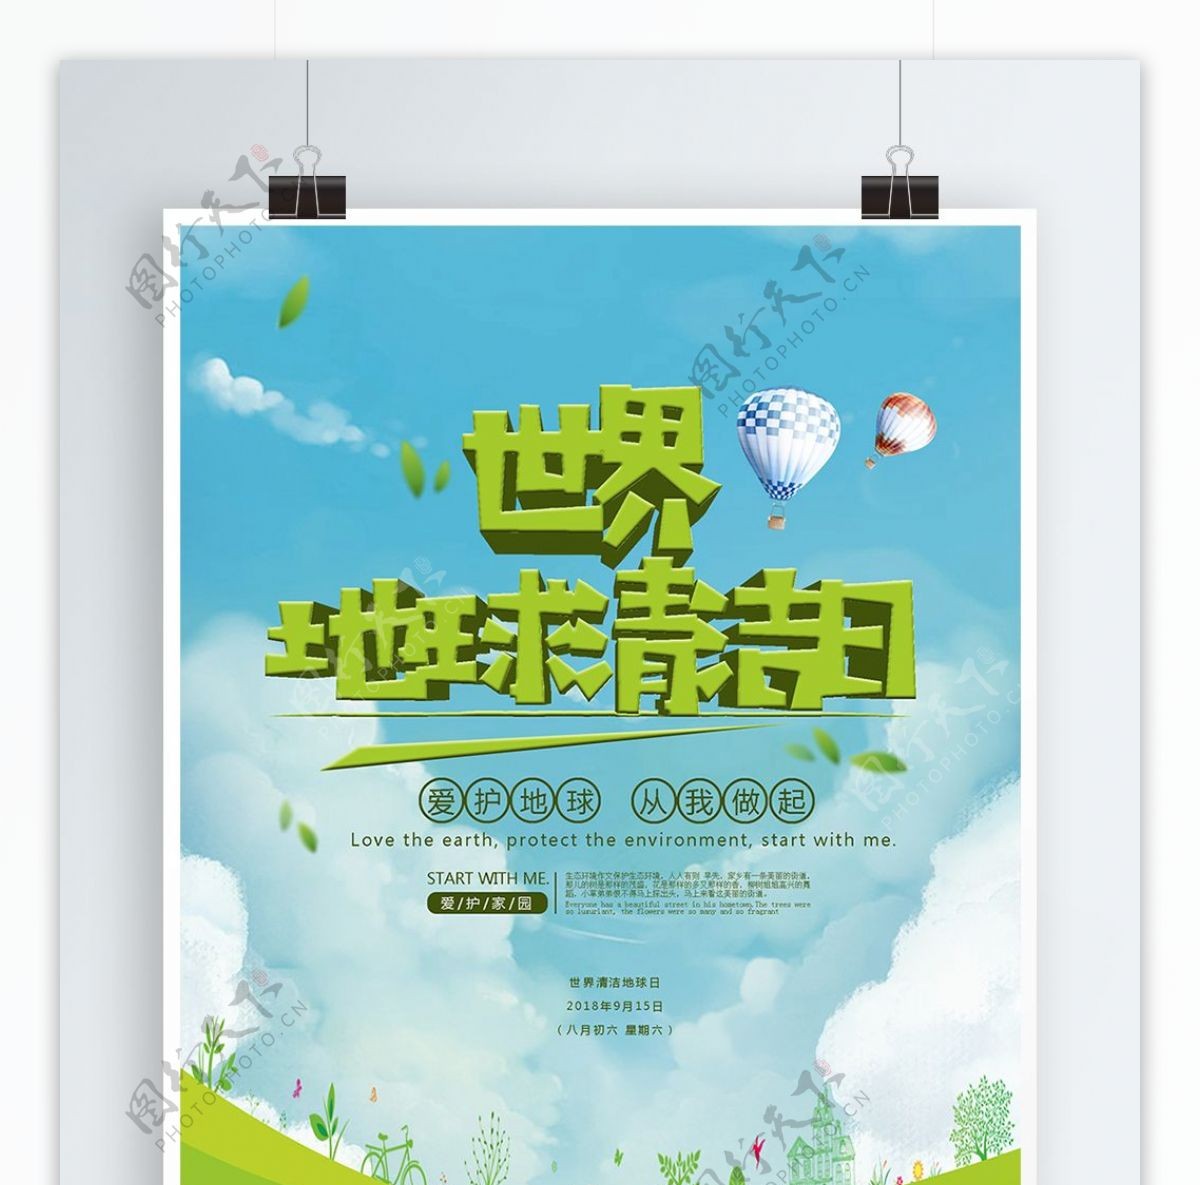 世界地球清洁日主题海报设计